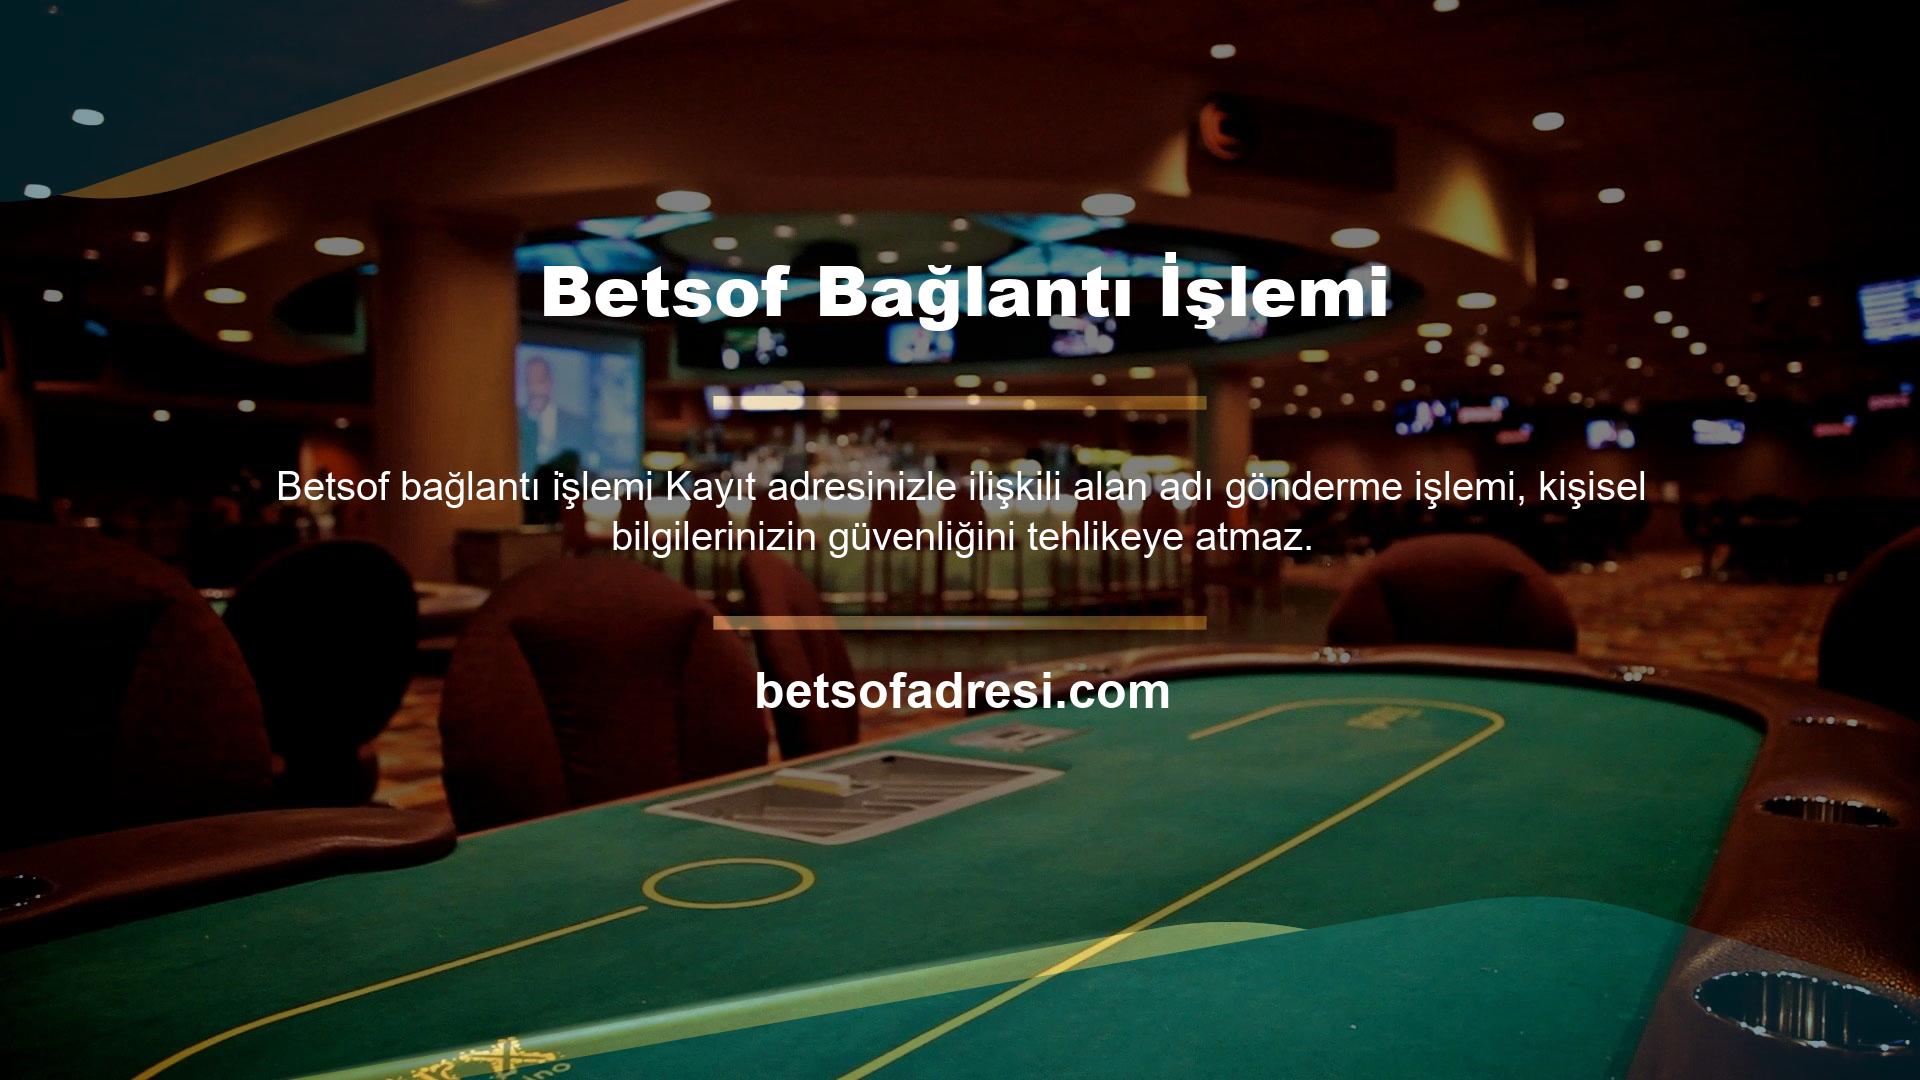 Betsof Bahis, Avrupa'da dev bir casino olma yolunda müşteri odaklı bir yaklaşımla kullanıcı portföyünü genişletmek için emin adımlarla ilerliyor